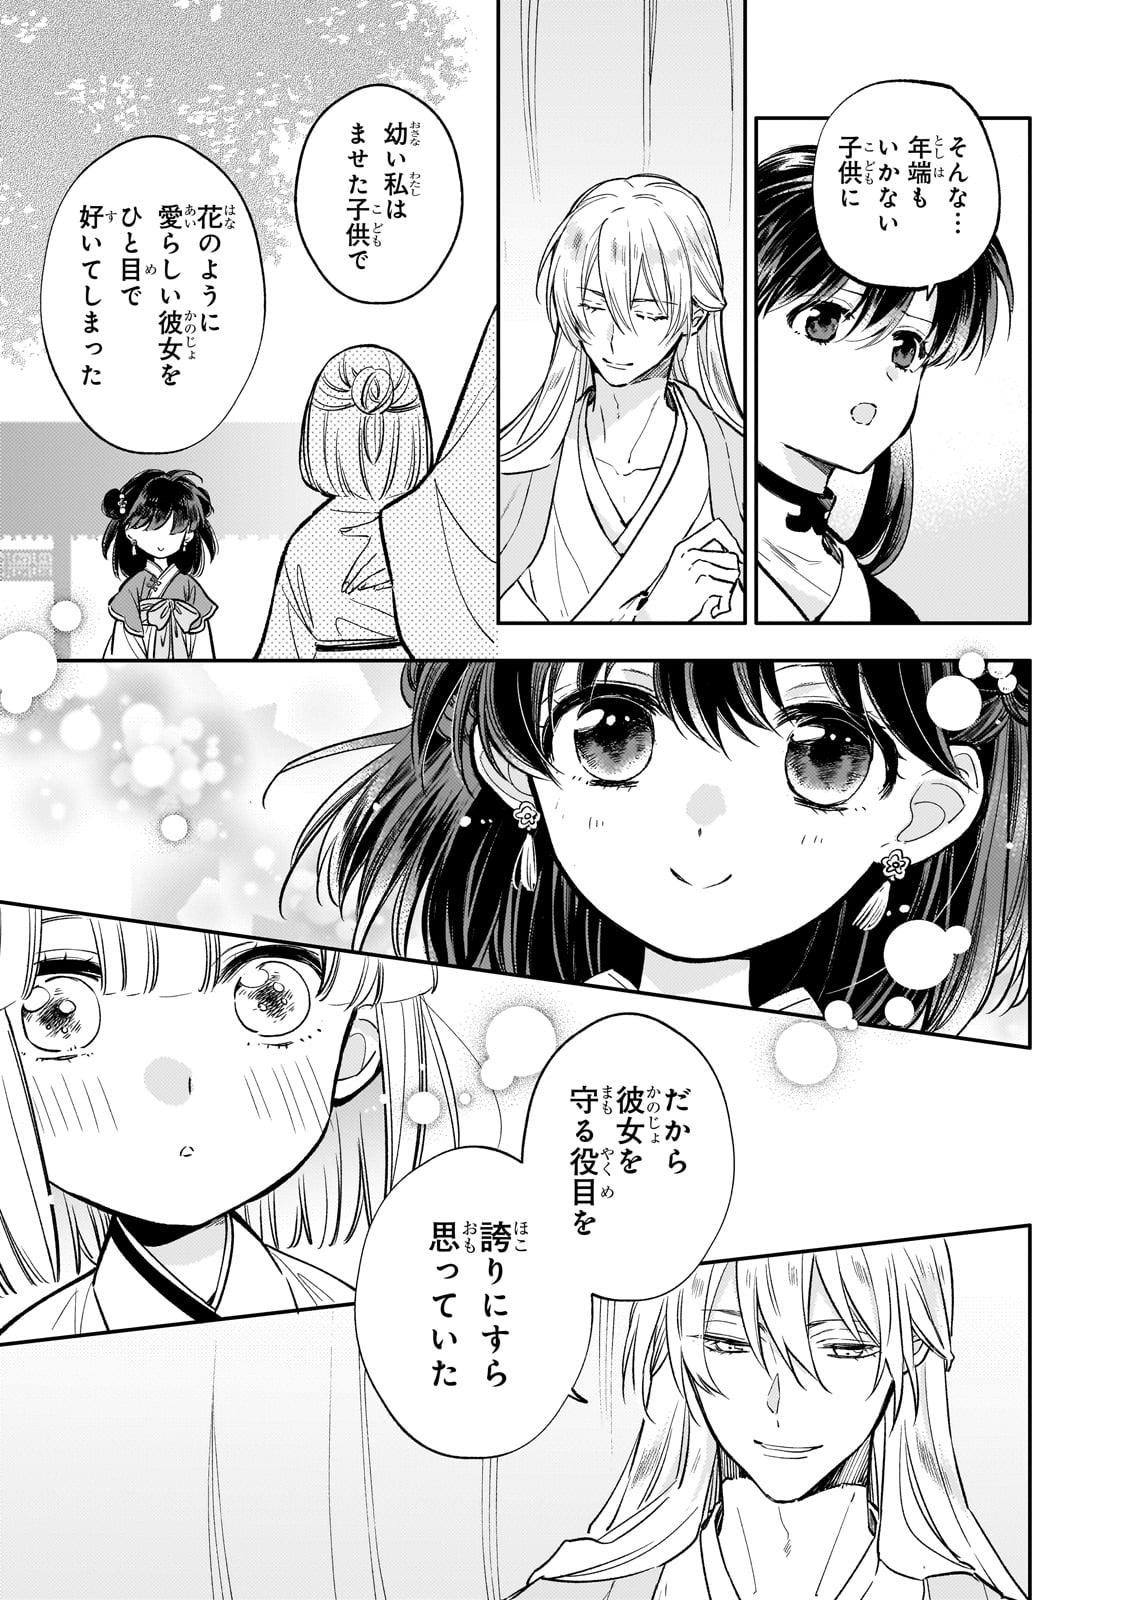 Koukyu no Zatsuyouki - Chapter 26 - Page 5